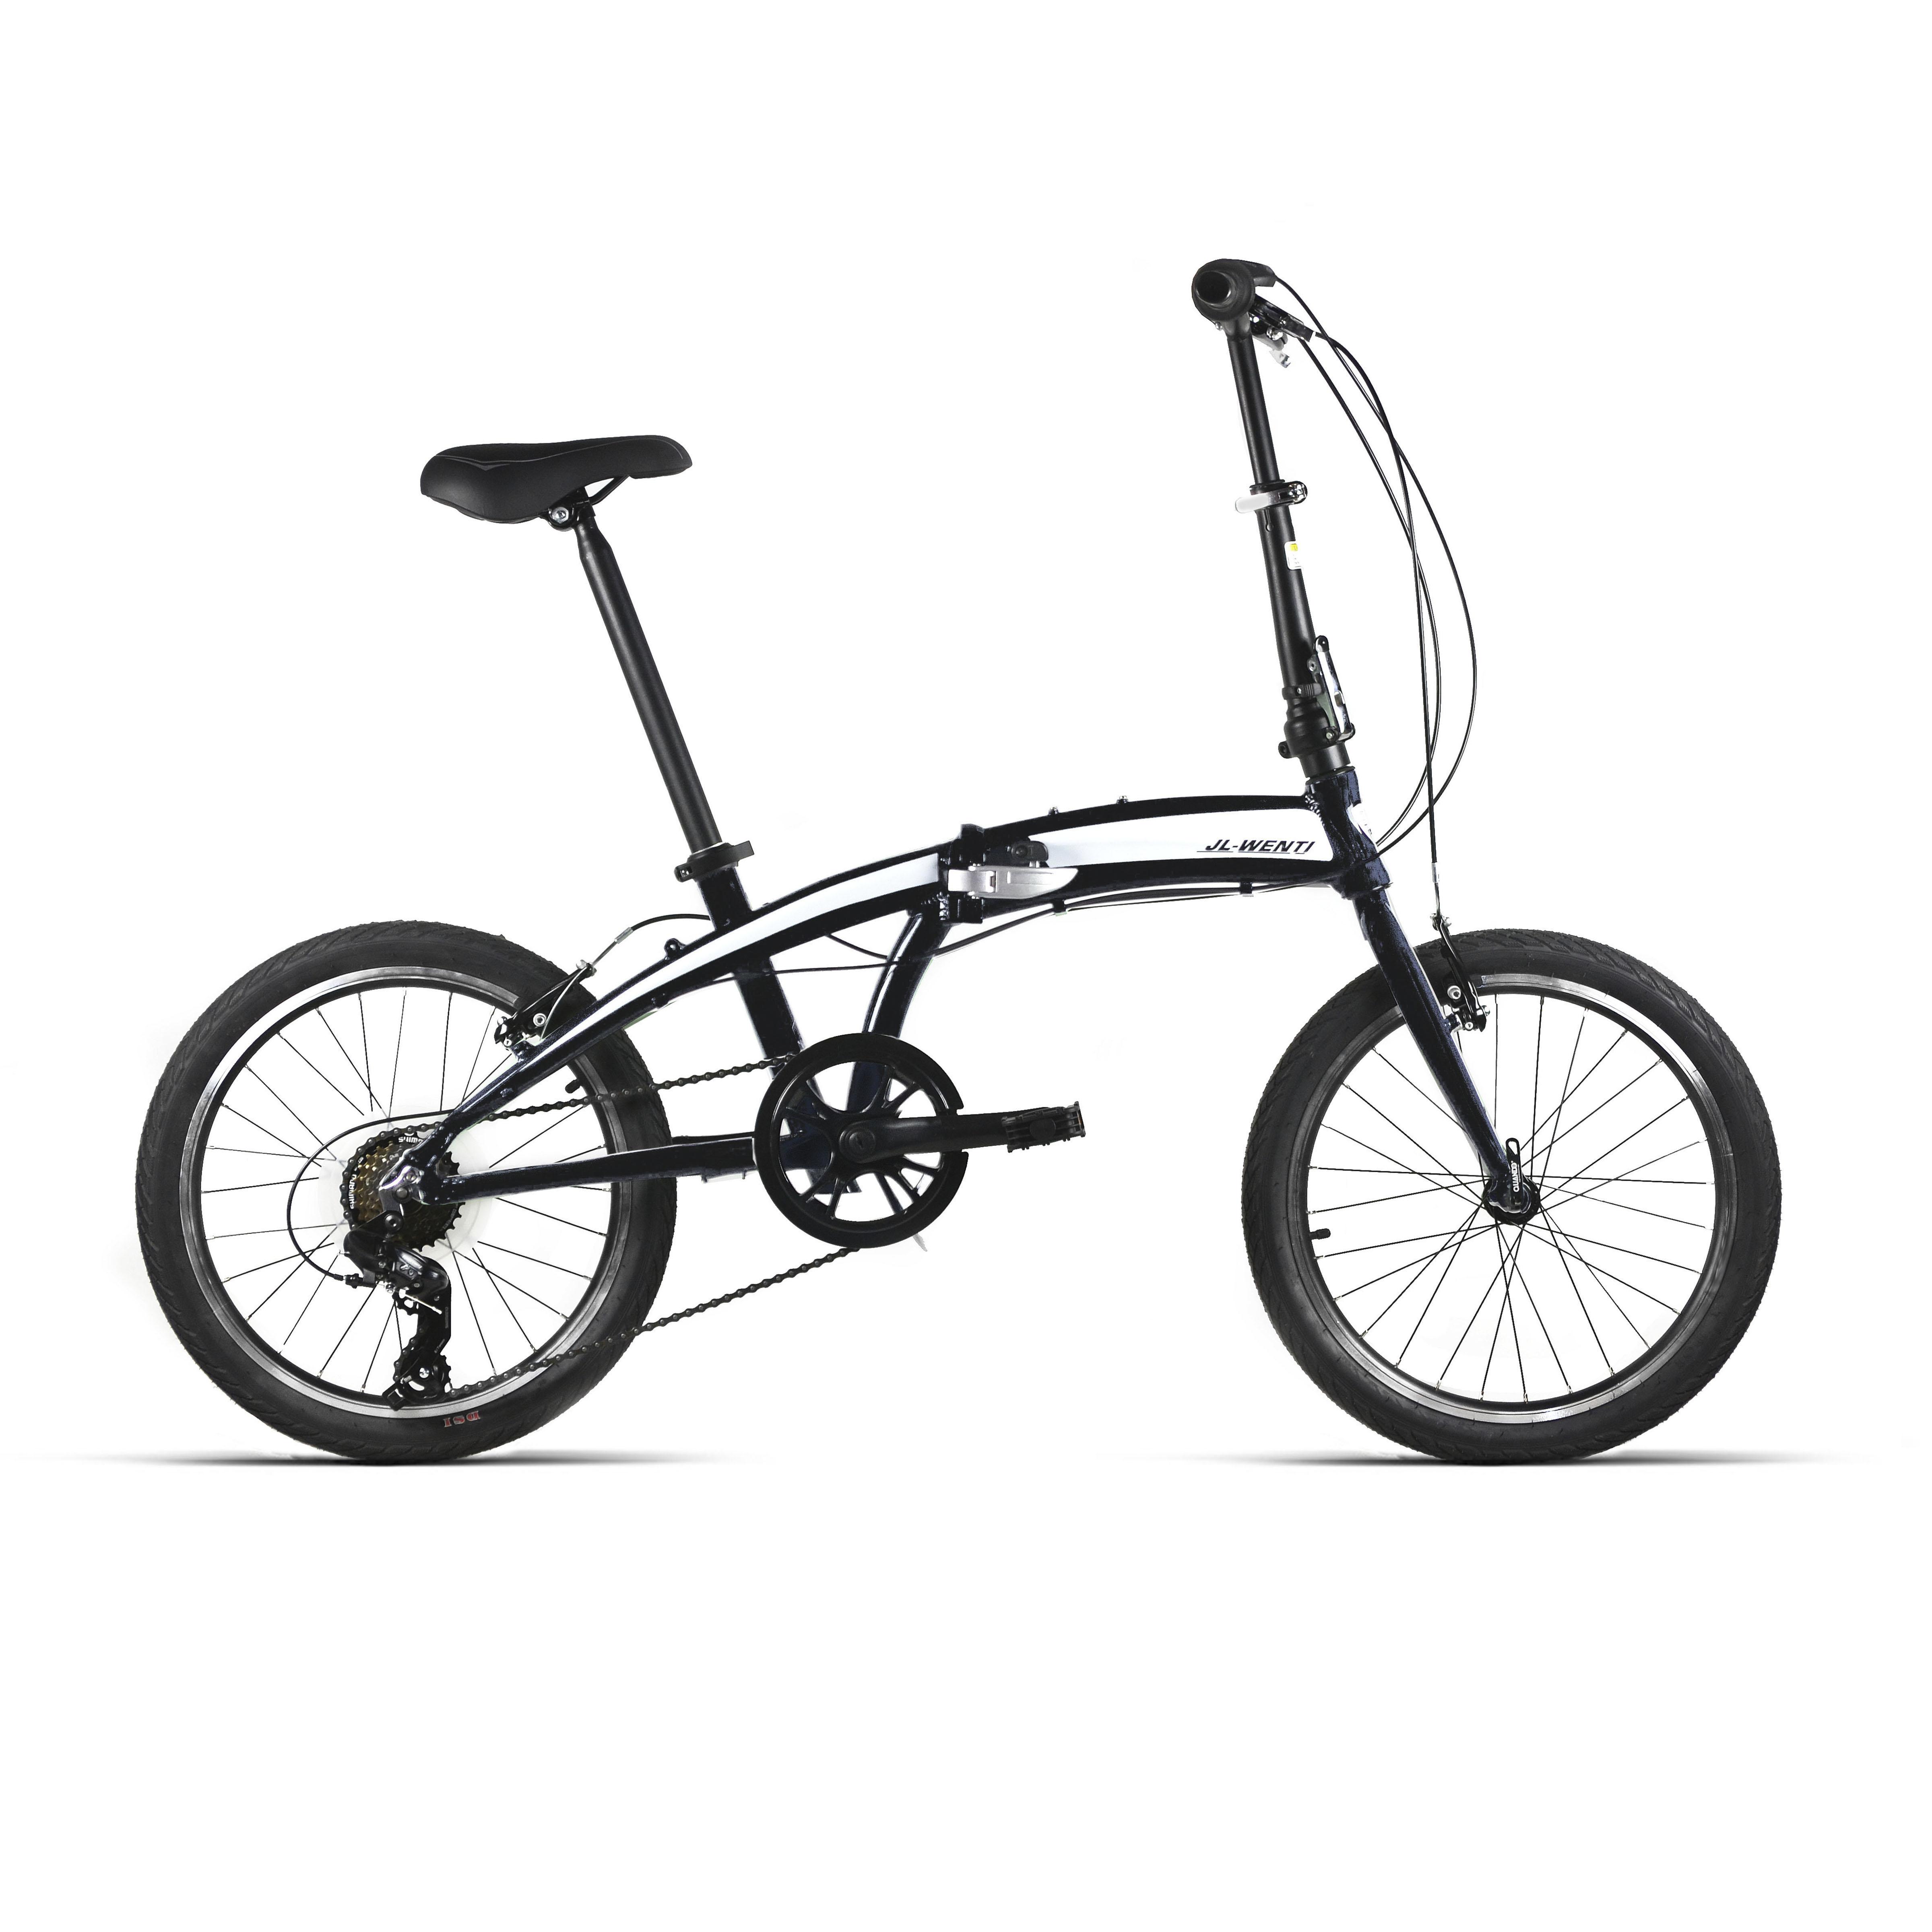 Bici Española Plegable Aluminio Dahon Replica 20" 6v Multitalla